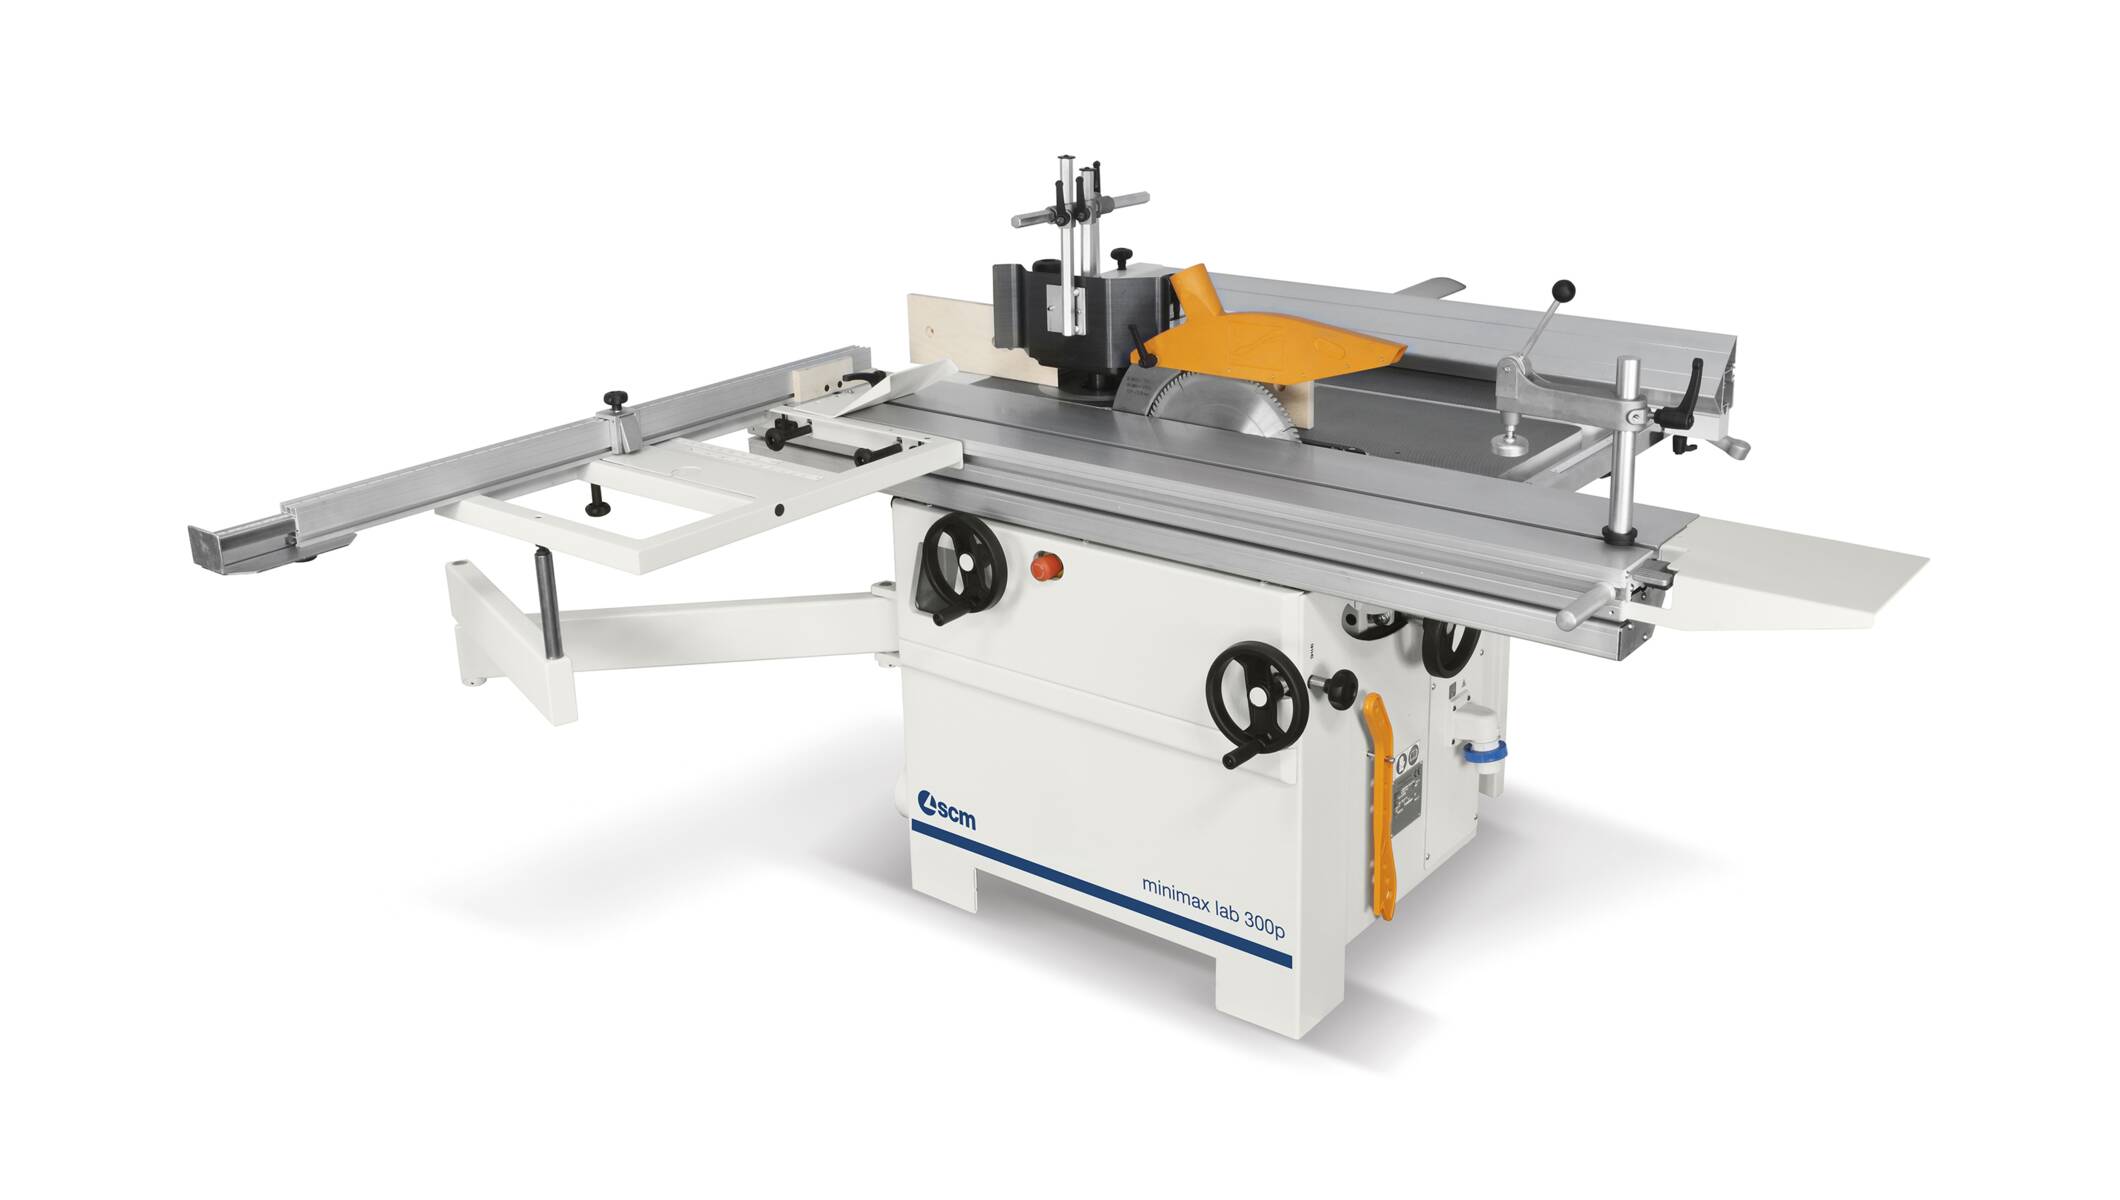 Tischlereimaschinen - Universal Kombimaschinen - minimax lab 300p